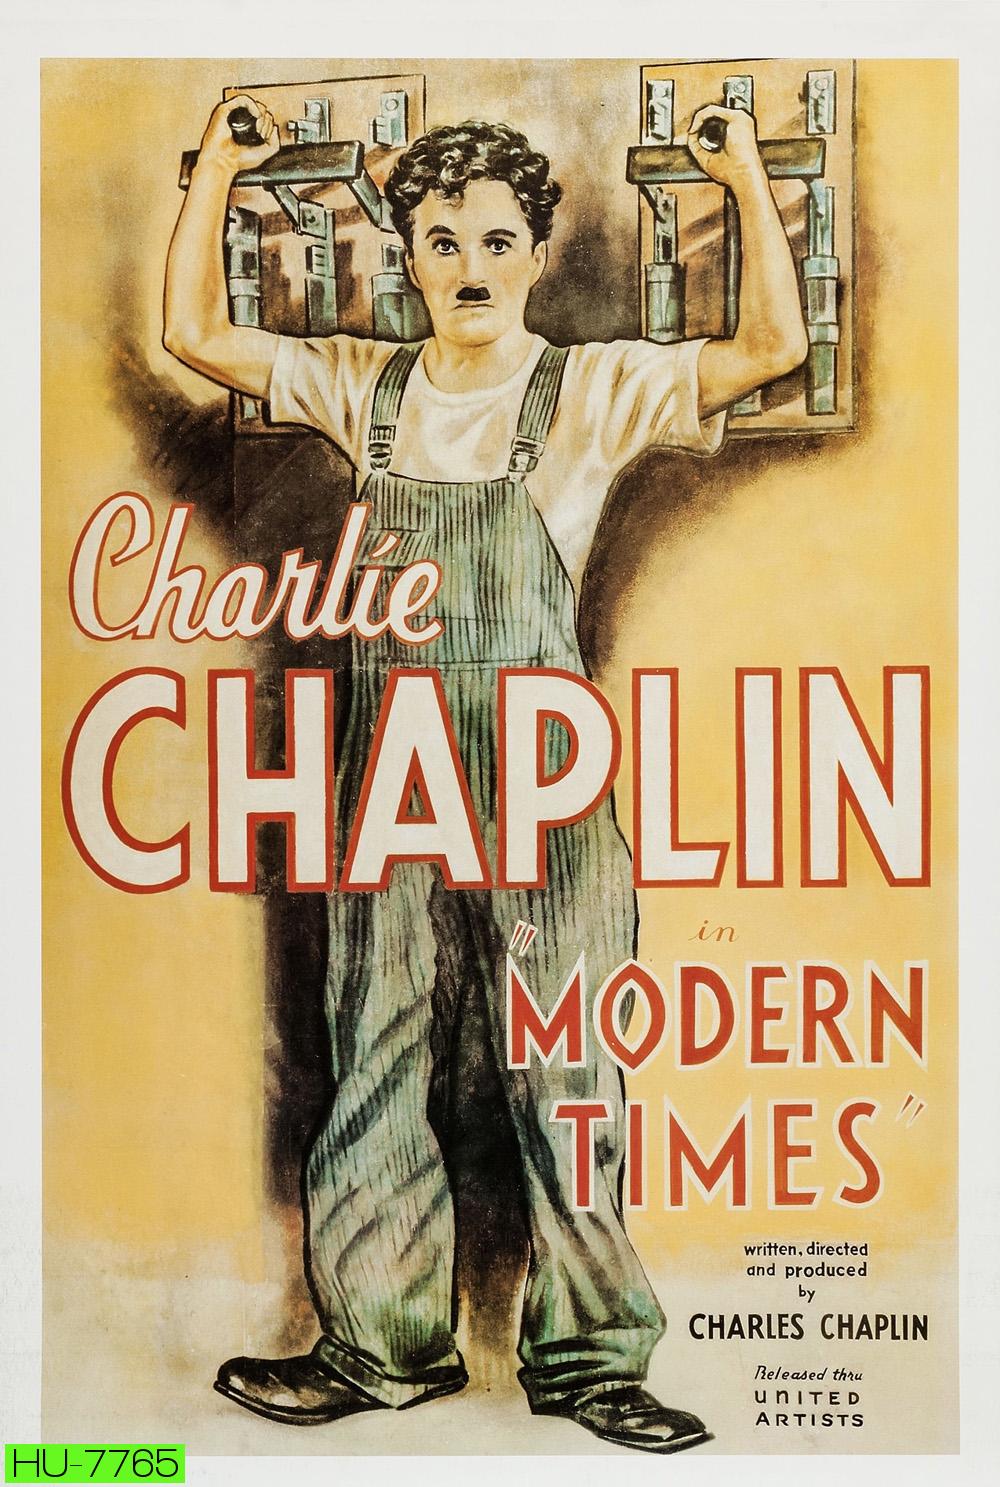 Charlie Chaplin: Modern Times ตอน เฮงบ่เฮงแต่บ่ตาย (พ.ศ. 2479) [พากย์อีสาน]